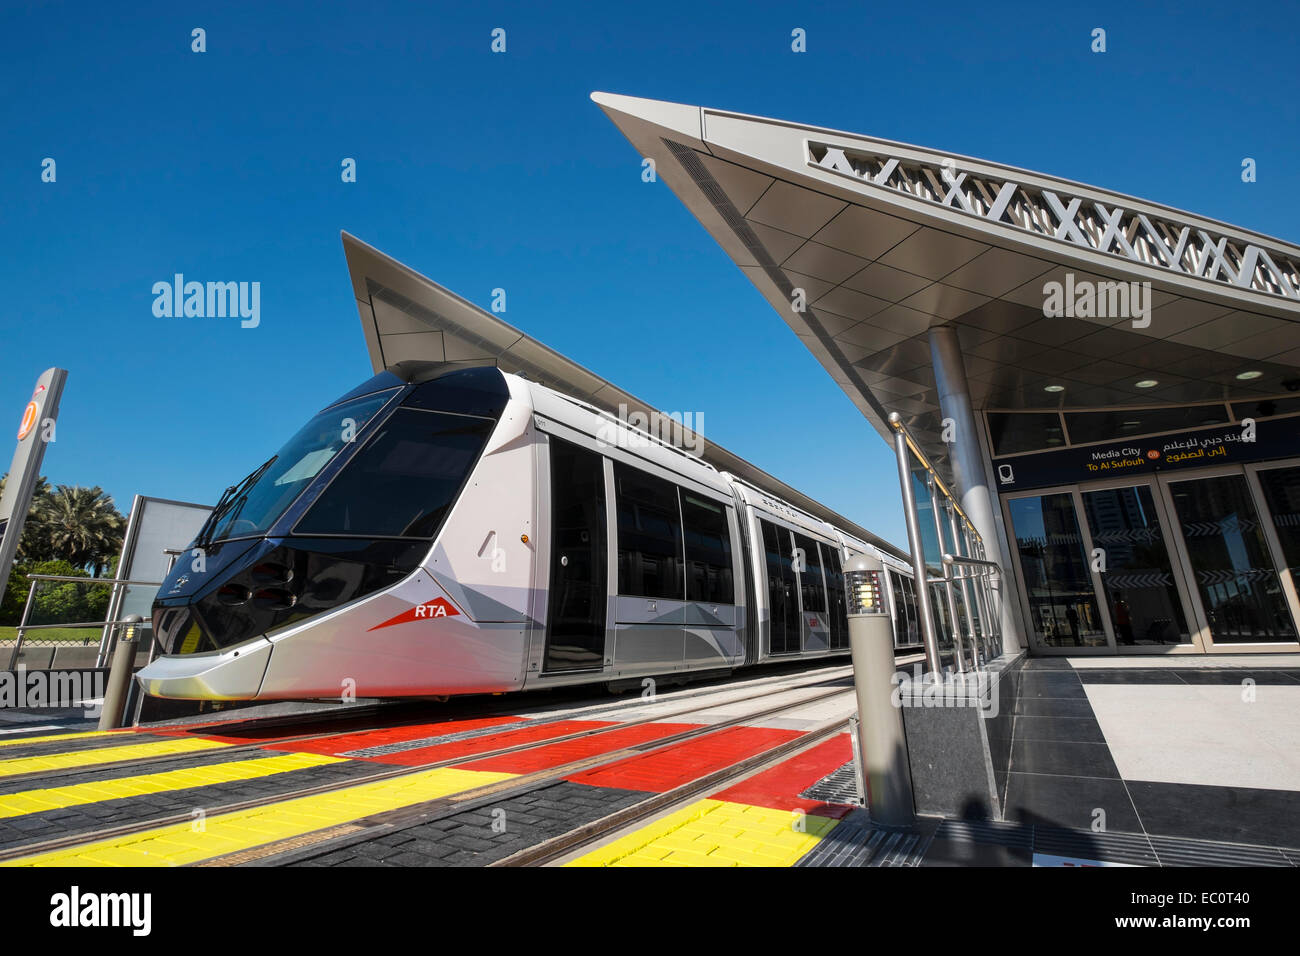 Bahnhof und Straßenbahn auf neue Dubai Straßenbahnsystem im Marina District von Dubai Vereinigte Arabische Emirate Stockfoto